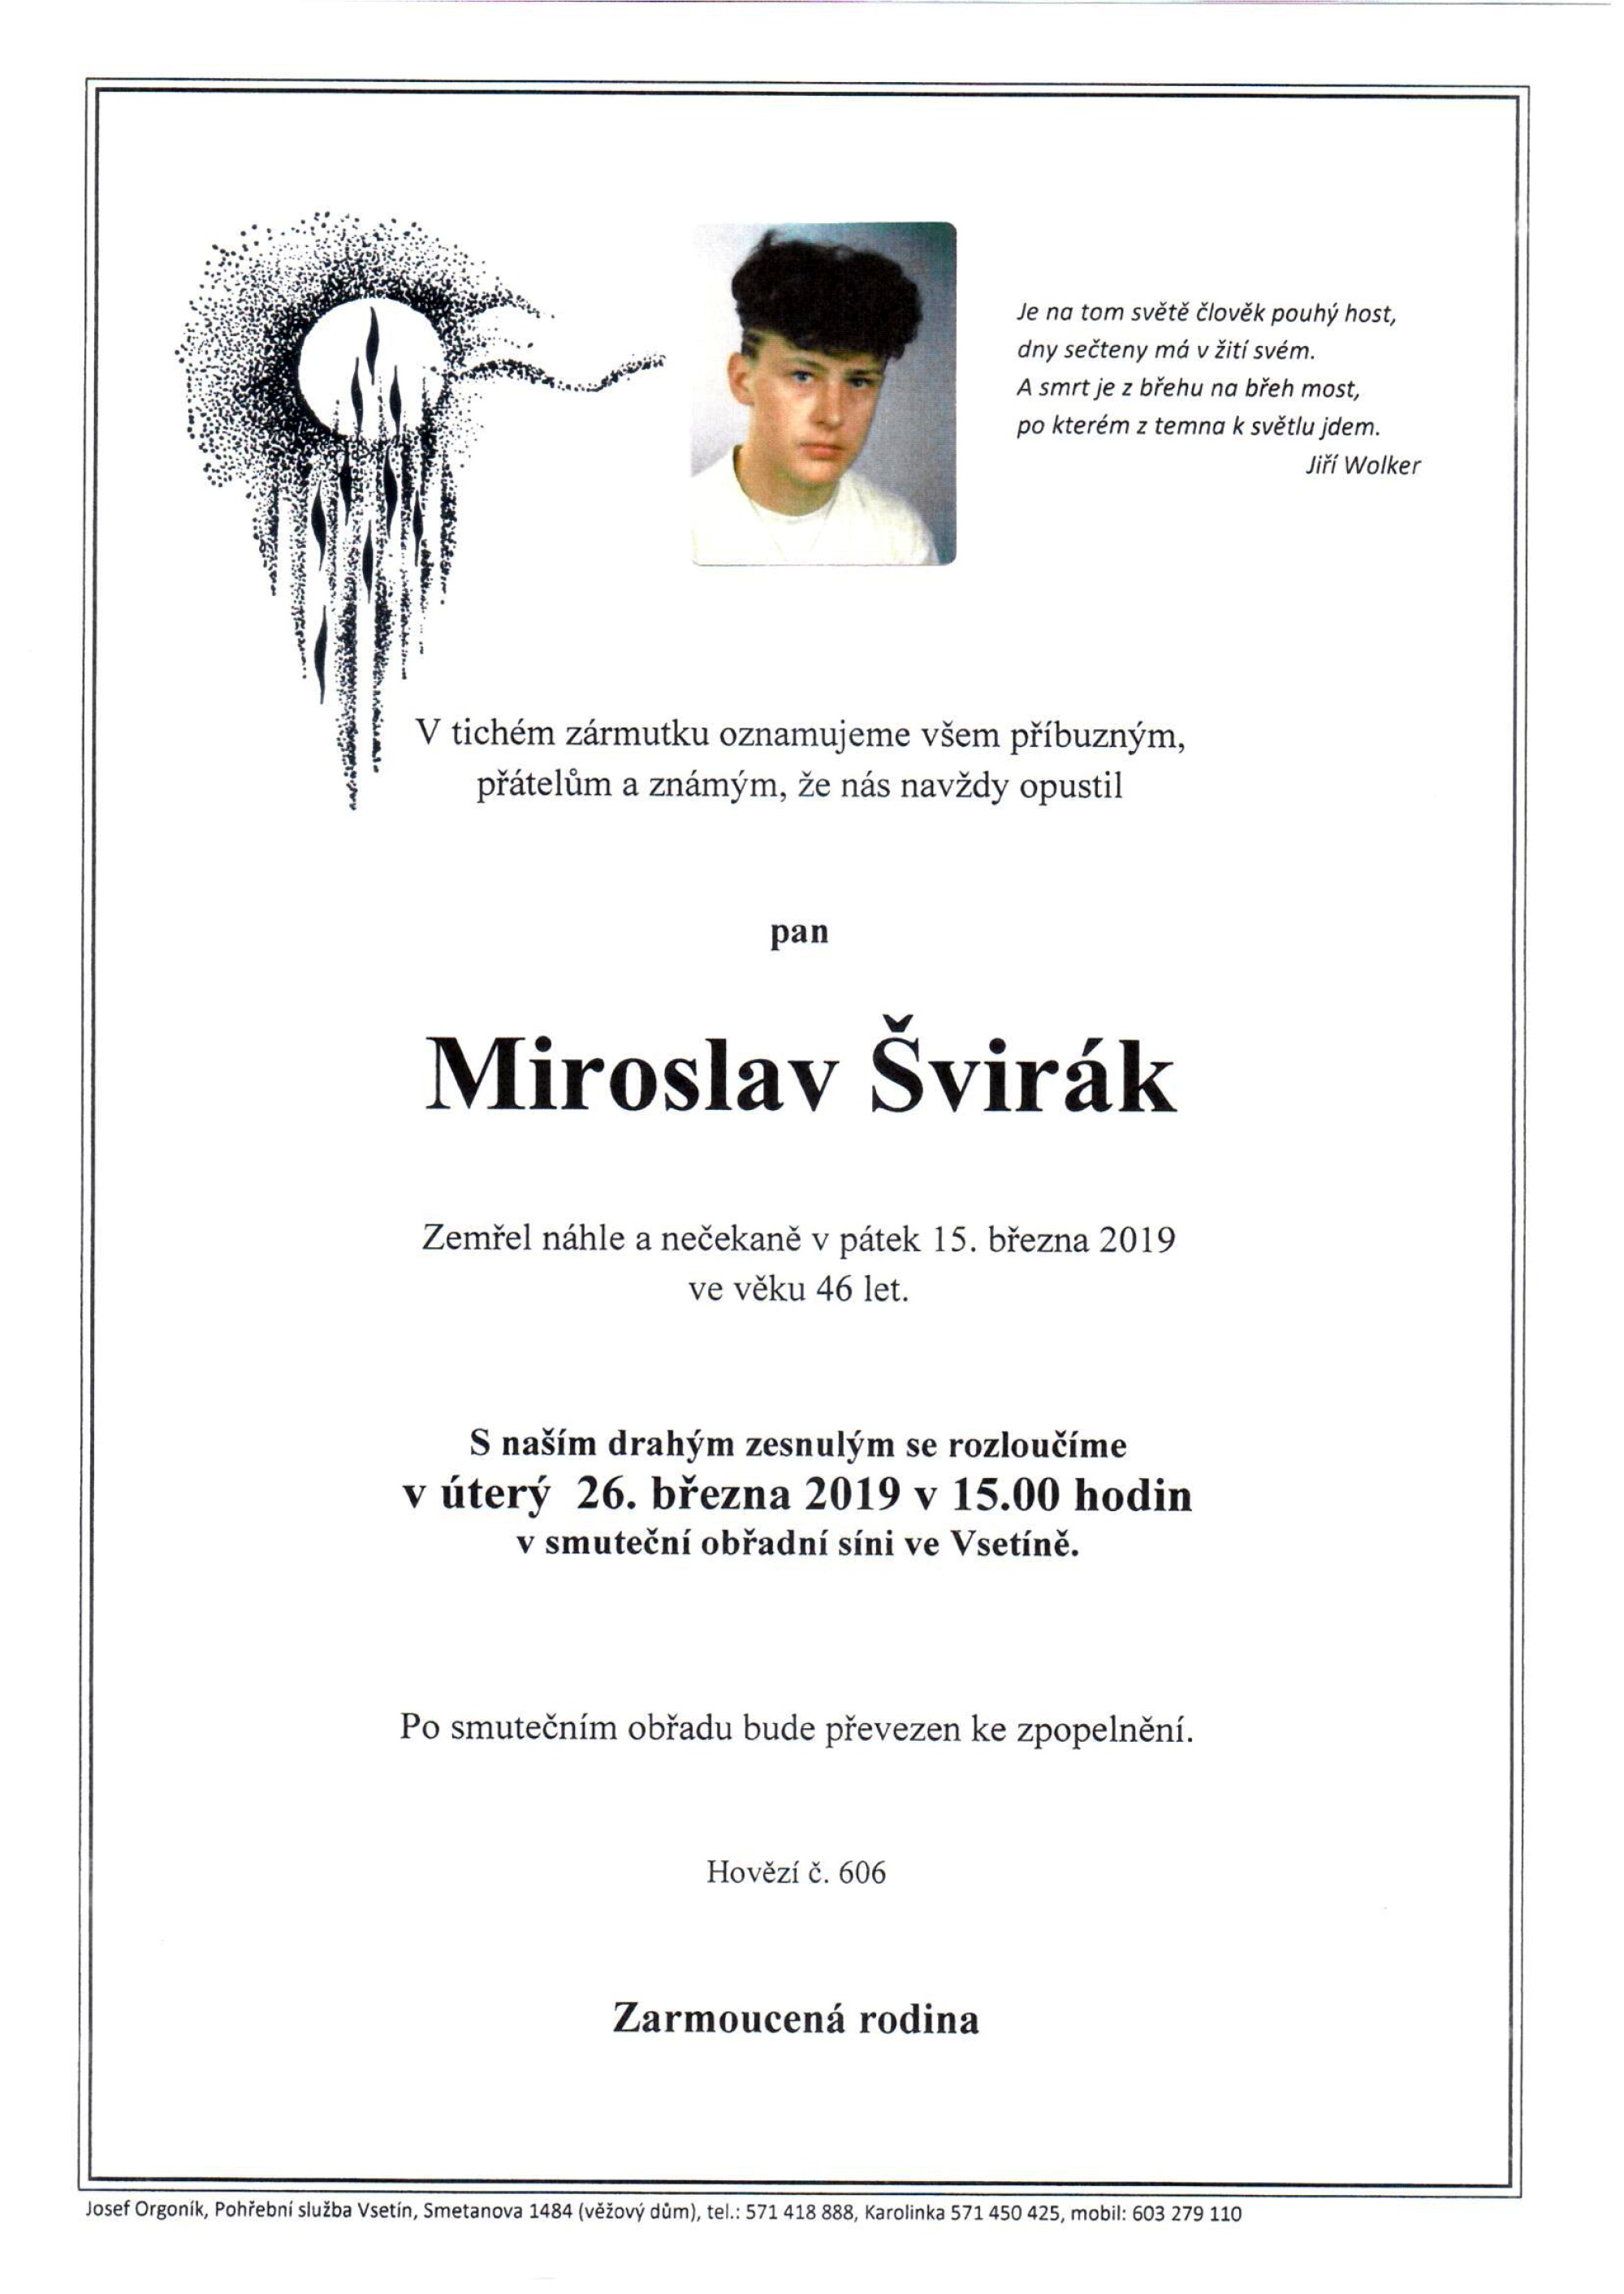 Miroslav Švirák